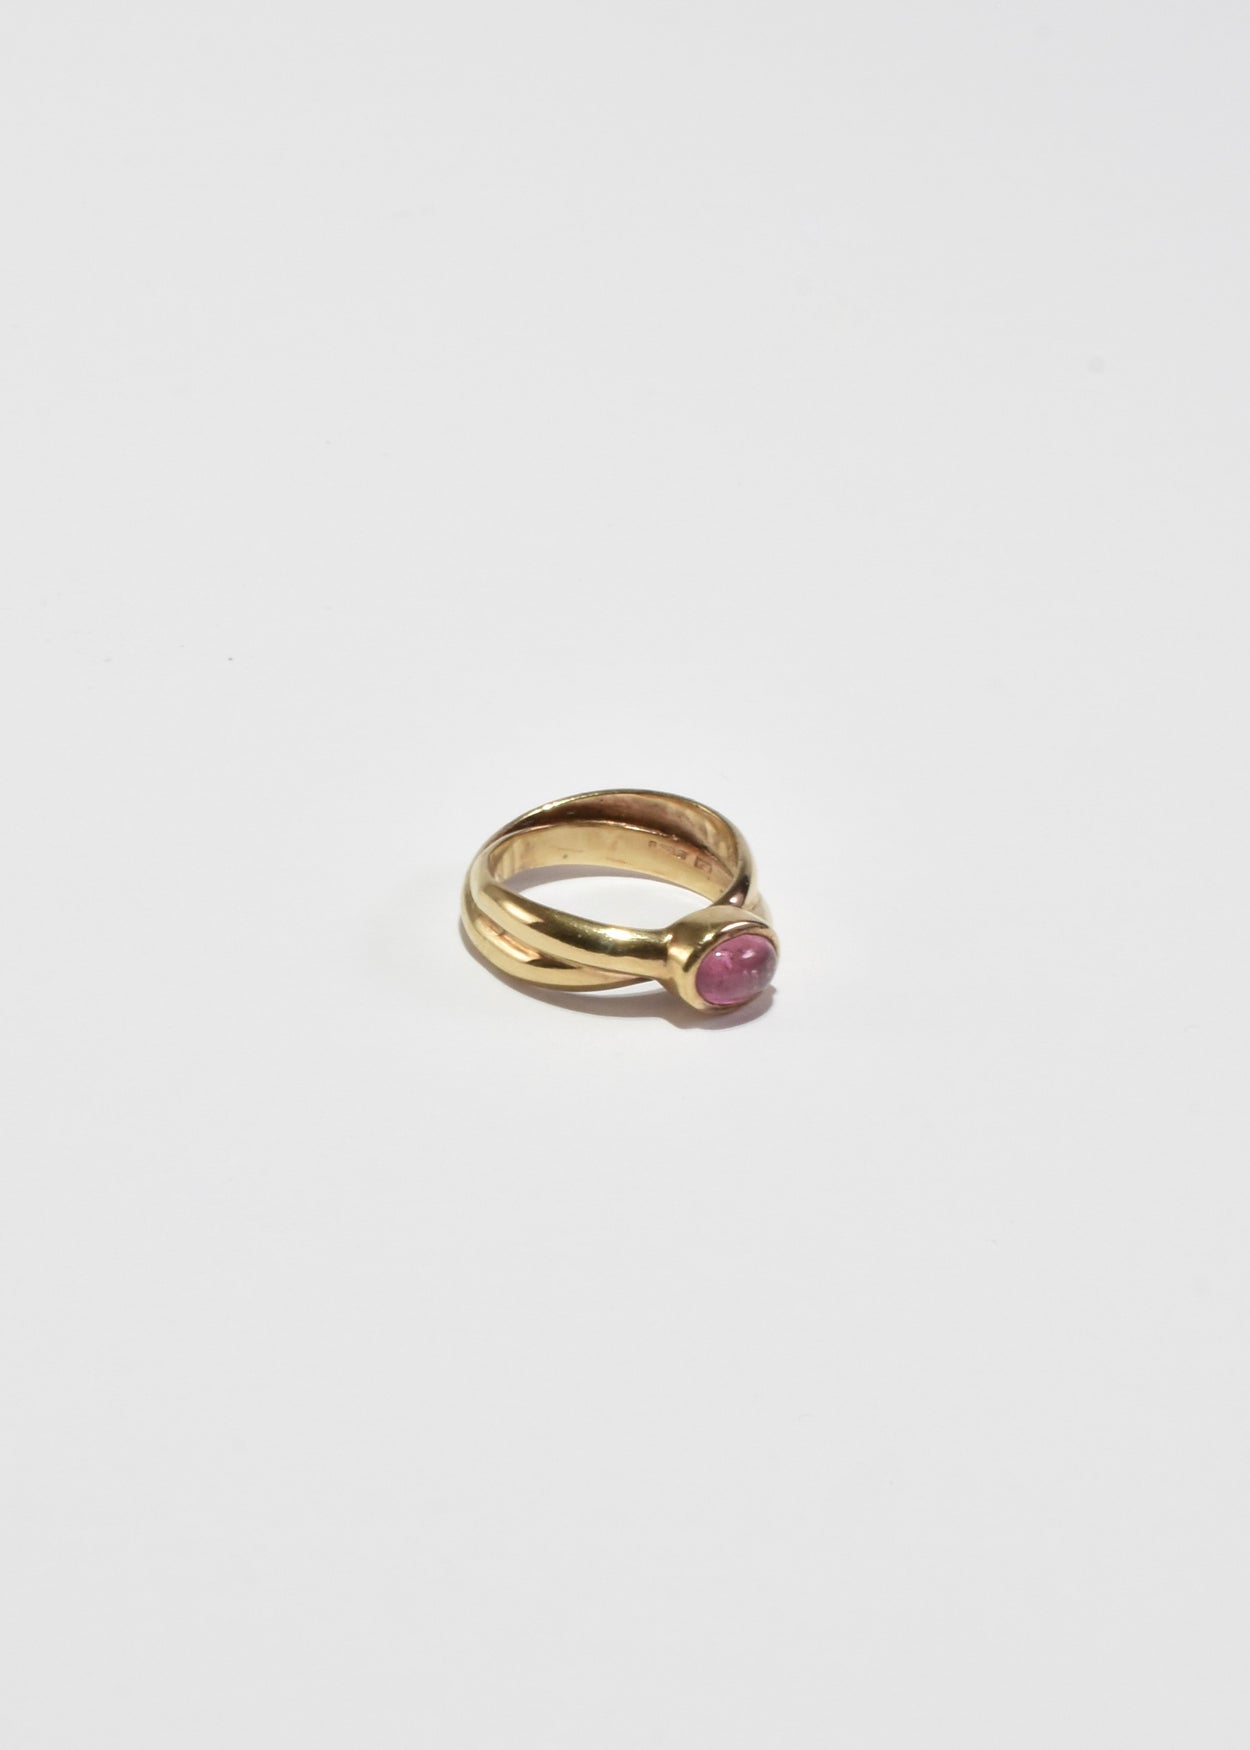 Gold Tourmaline Ring